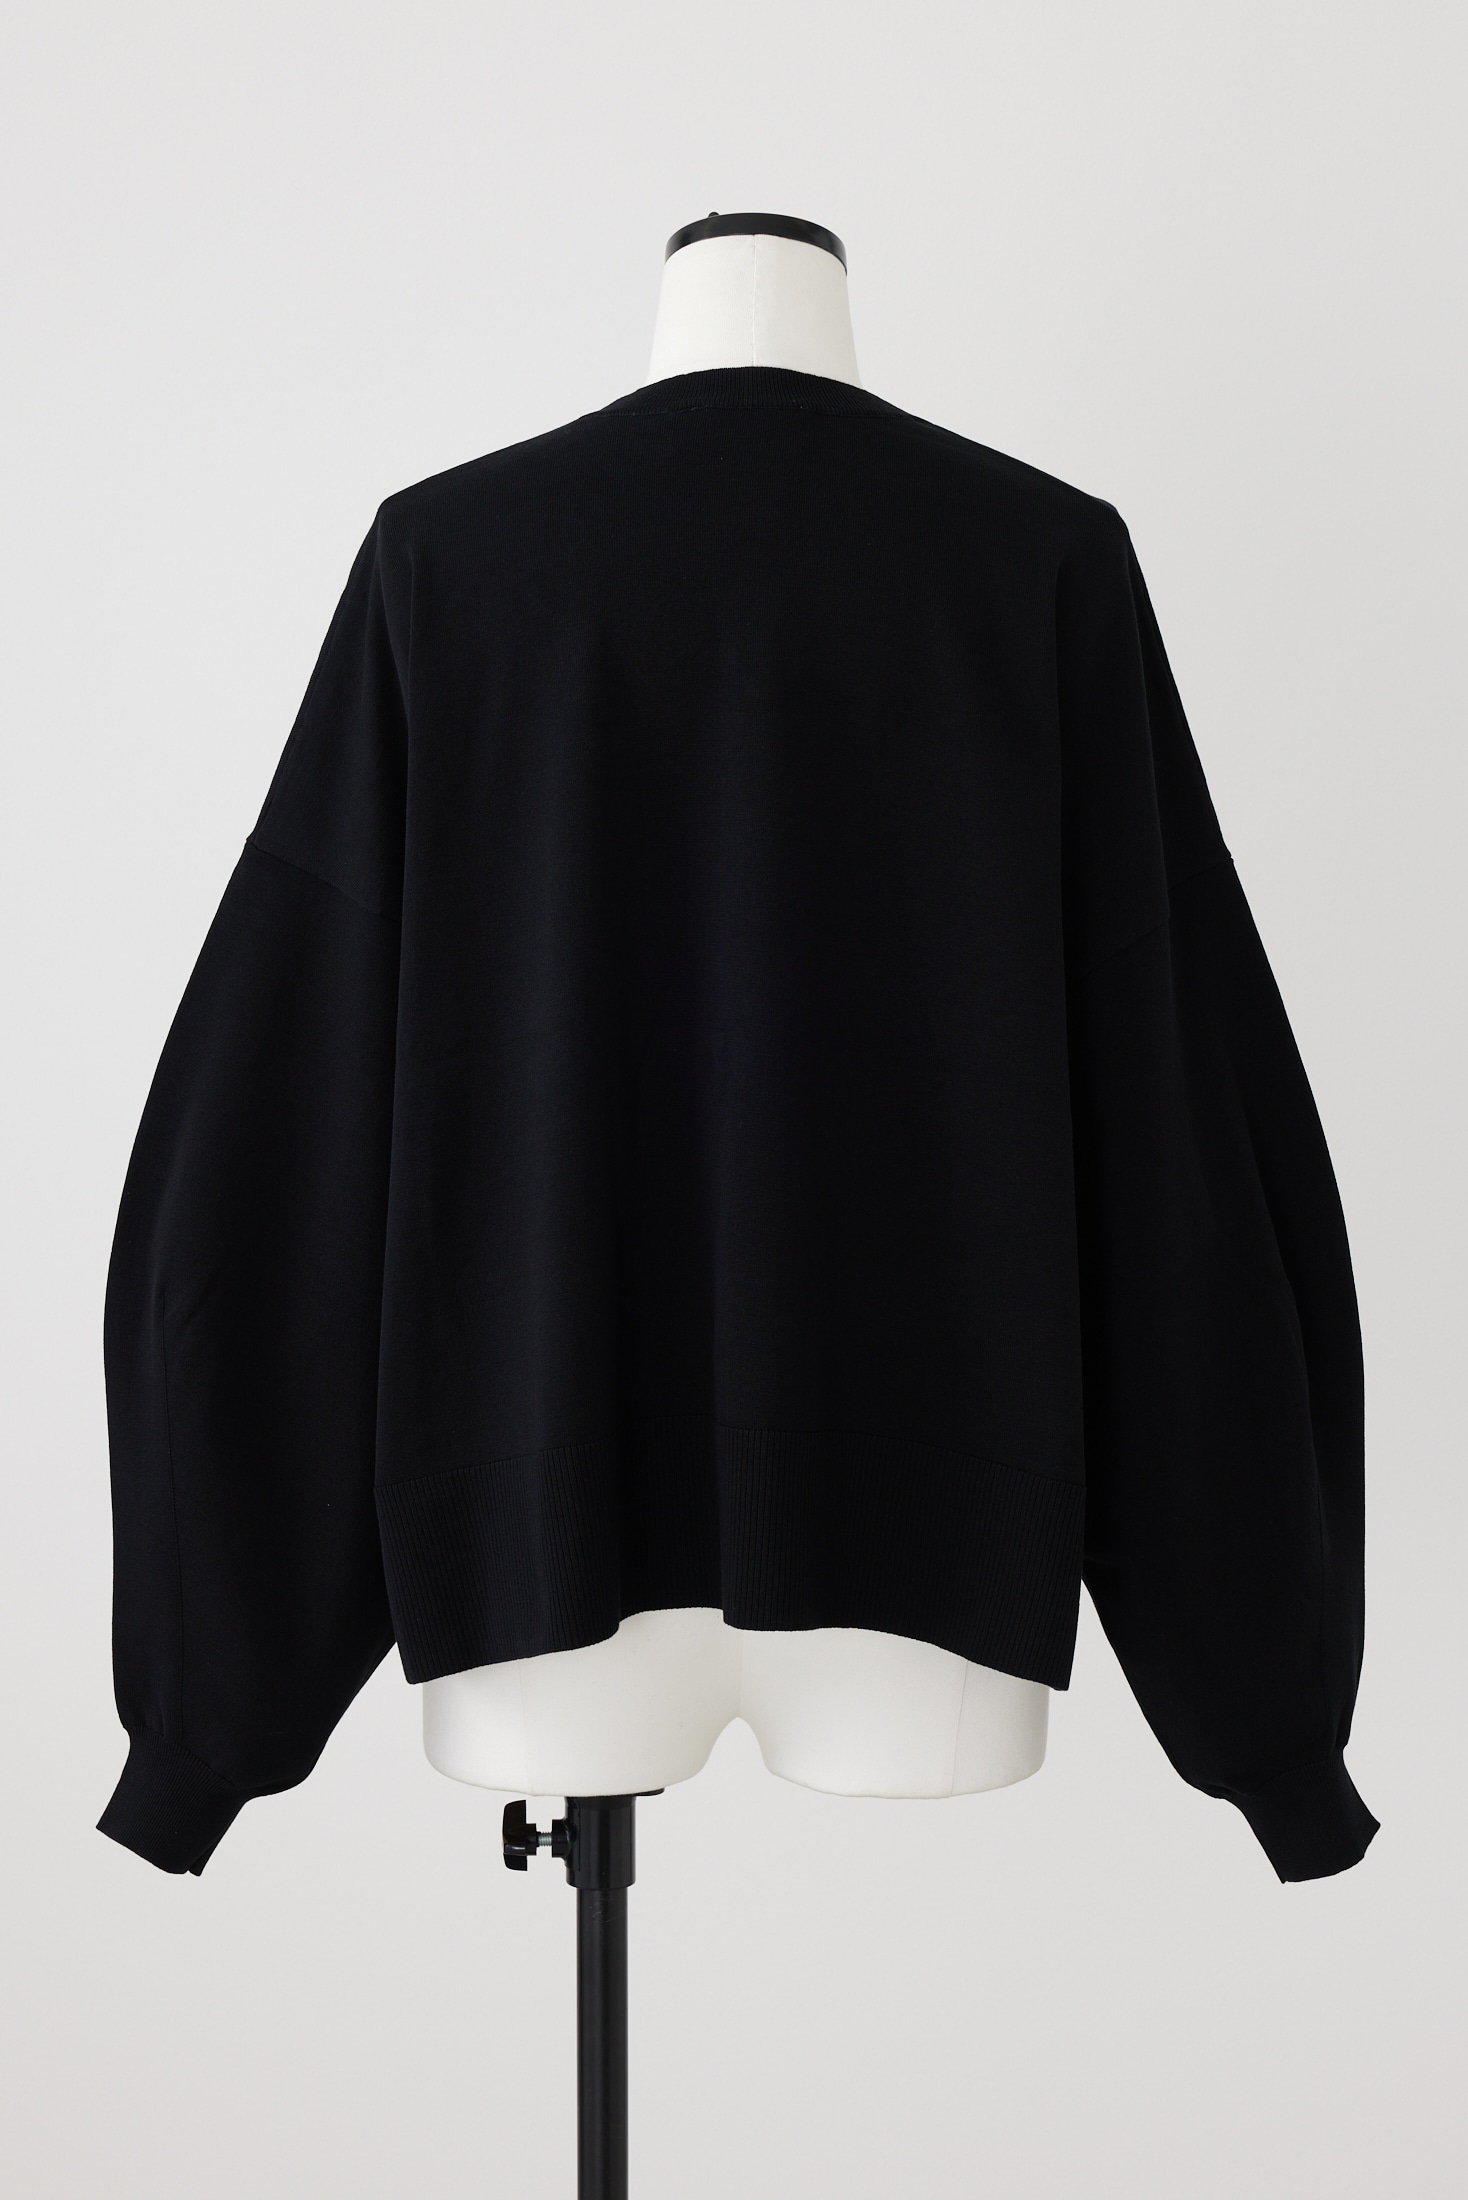 ○新品未使用nagonstans/knit pullover/黒/M size